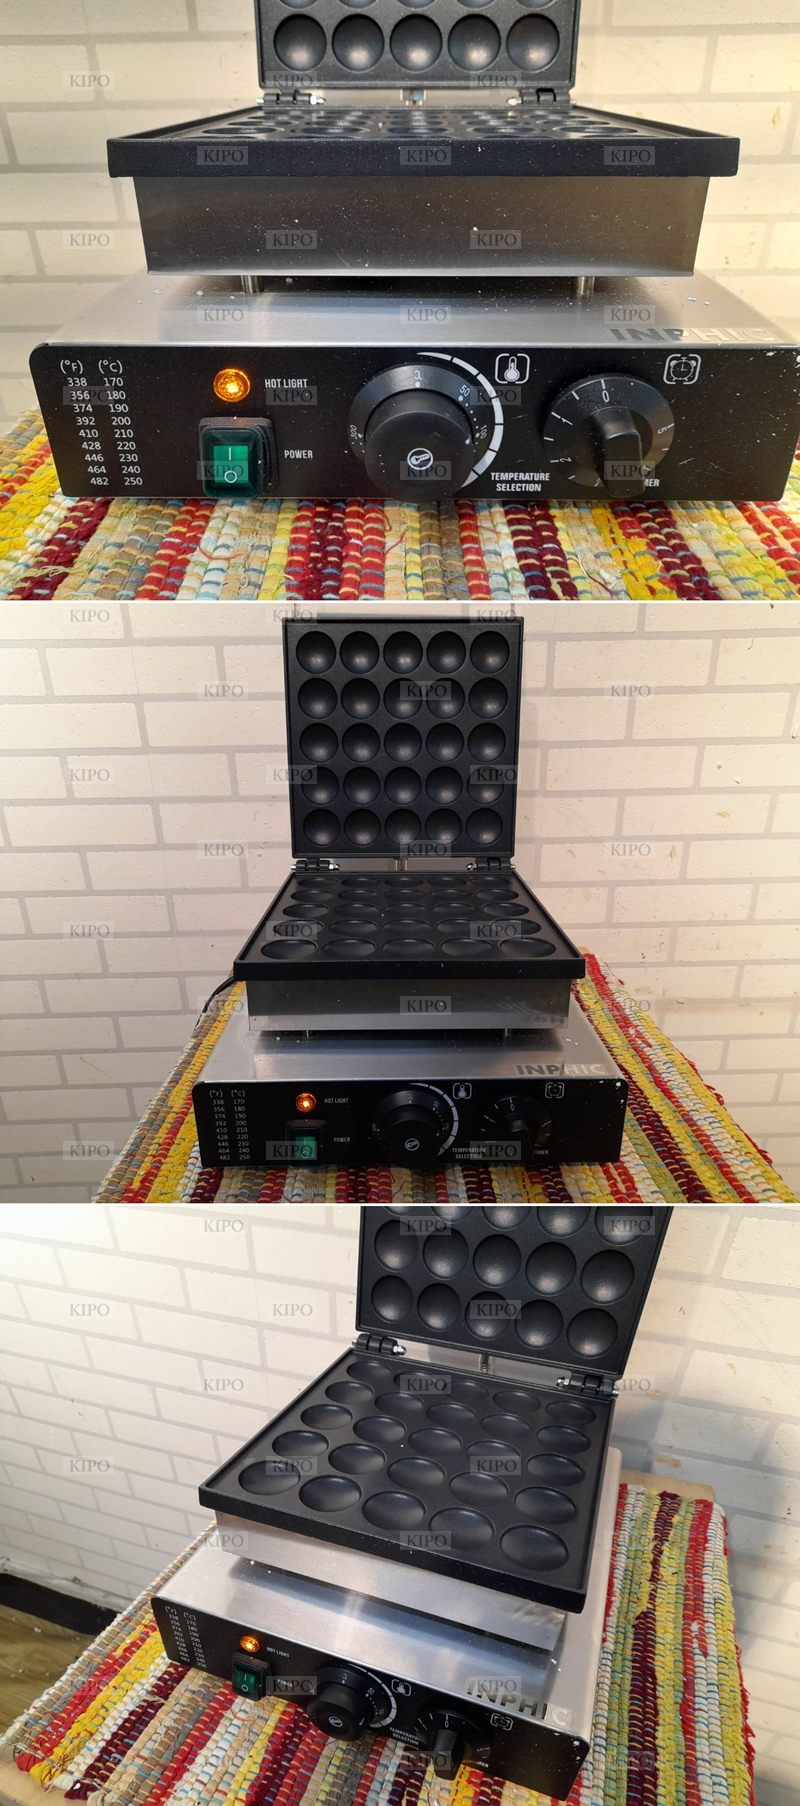 KIPO-銅鑼燒機小鬆餅機烤餅機可麗餅機設備-MRA002184A